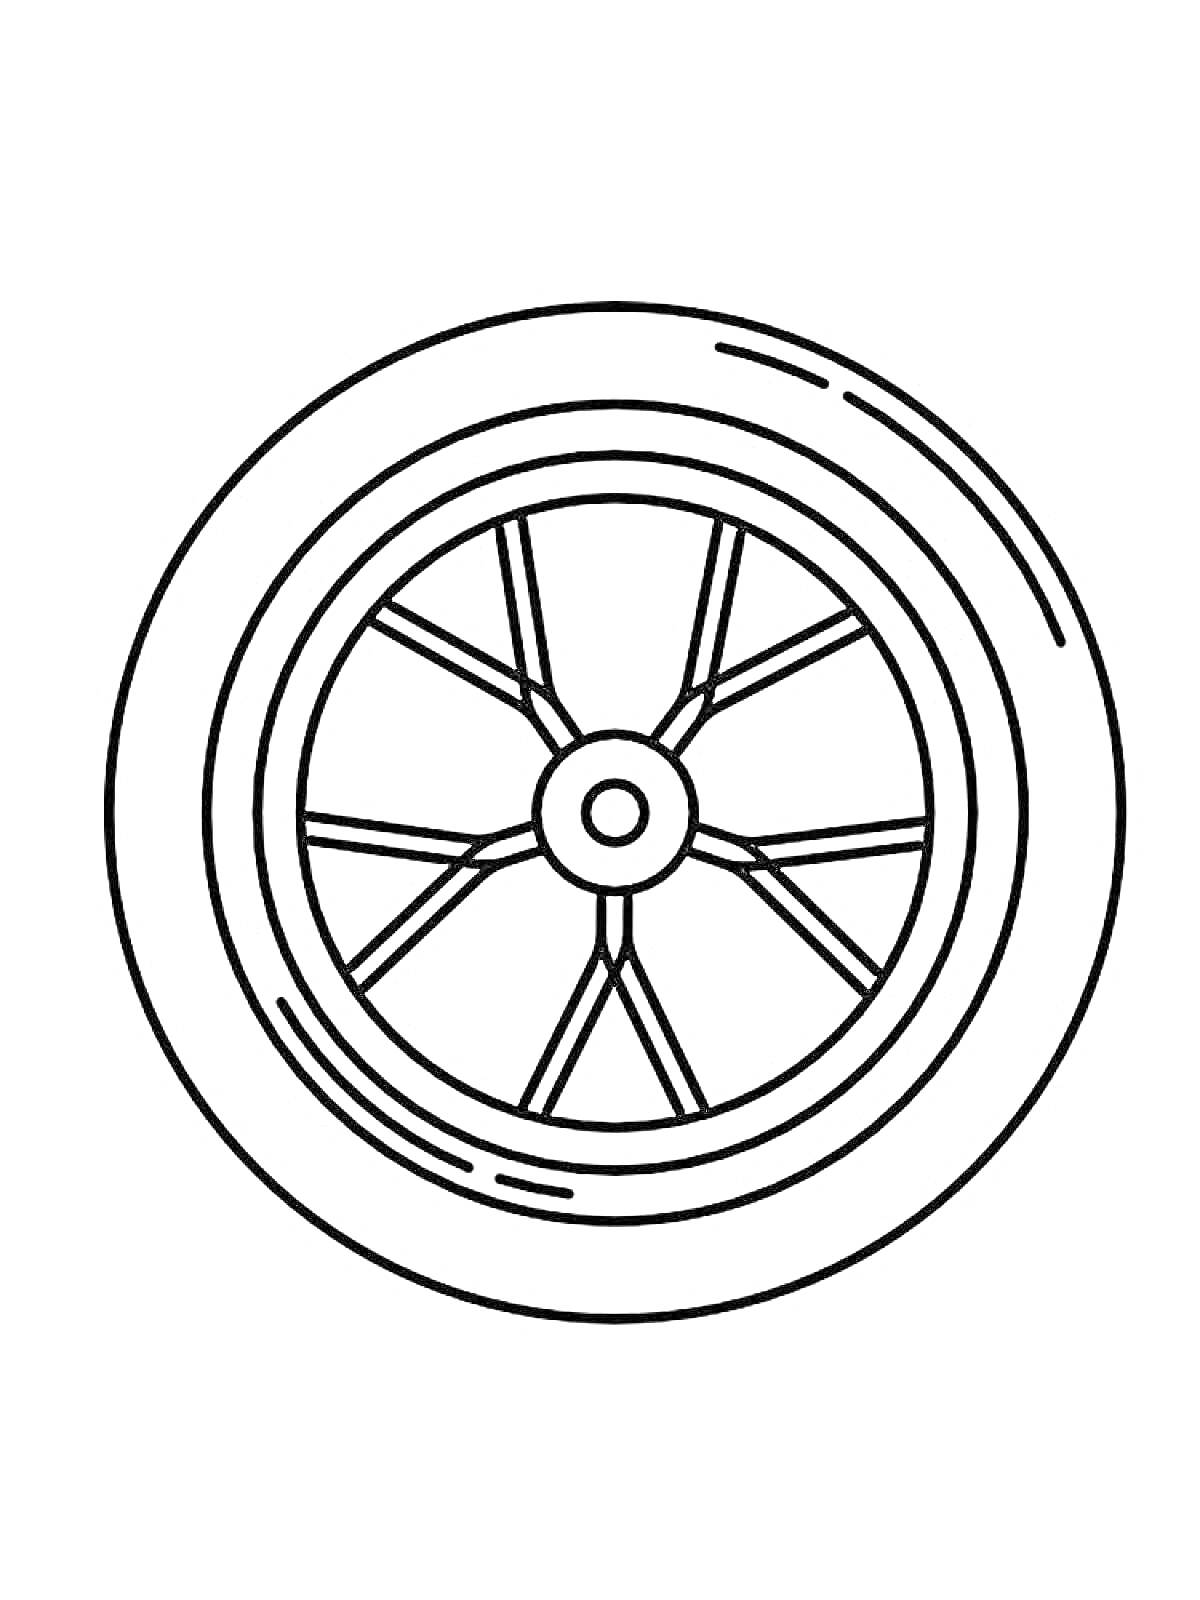 Раскраска Раскраска с изображением колеса с десятью спицами и центральным креплением